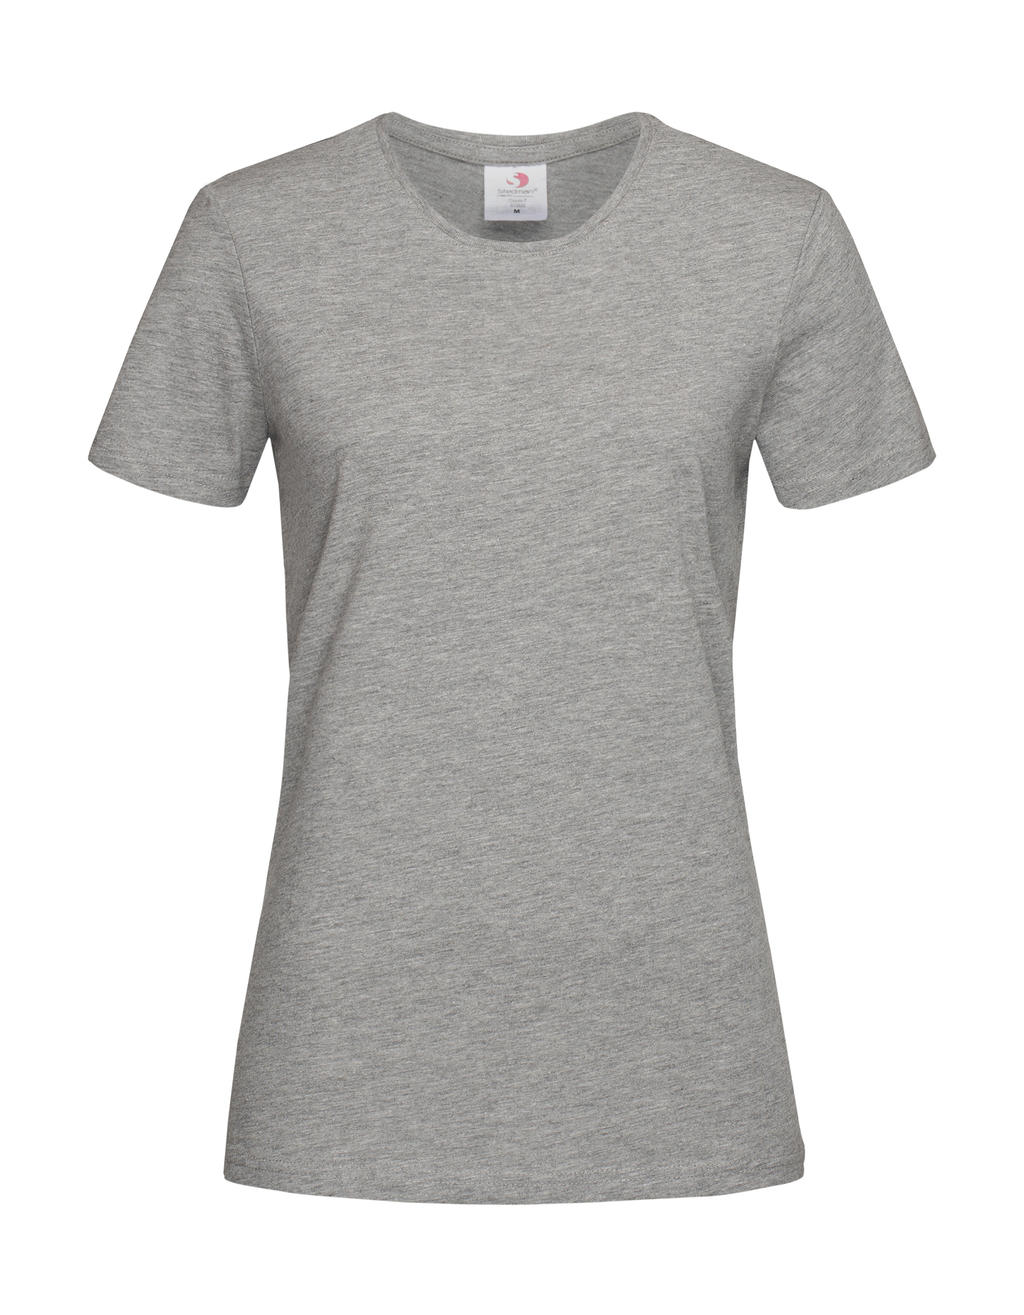 Tričko dámské Stedman Fitted s kulatým výstřihem - šedé-bílé, XXL